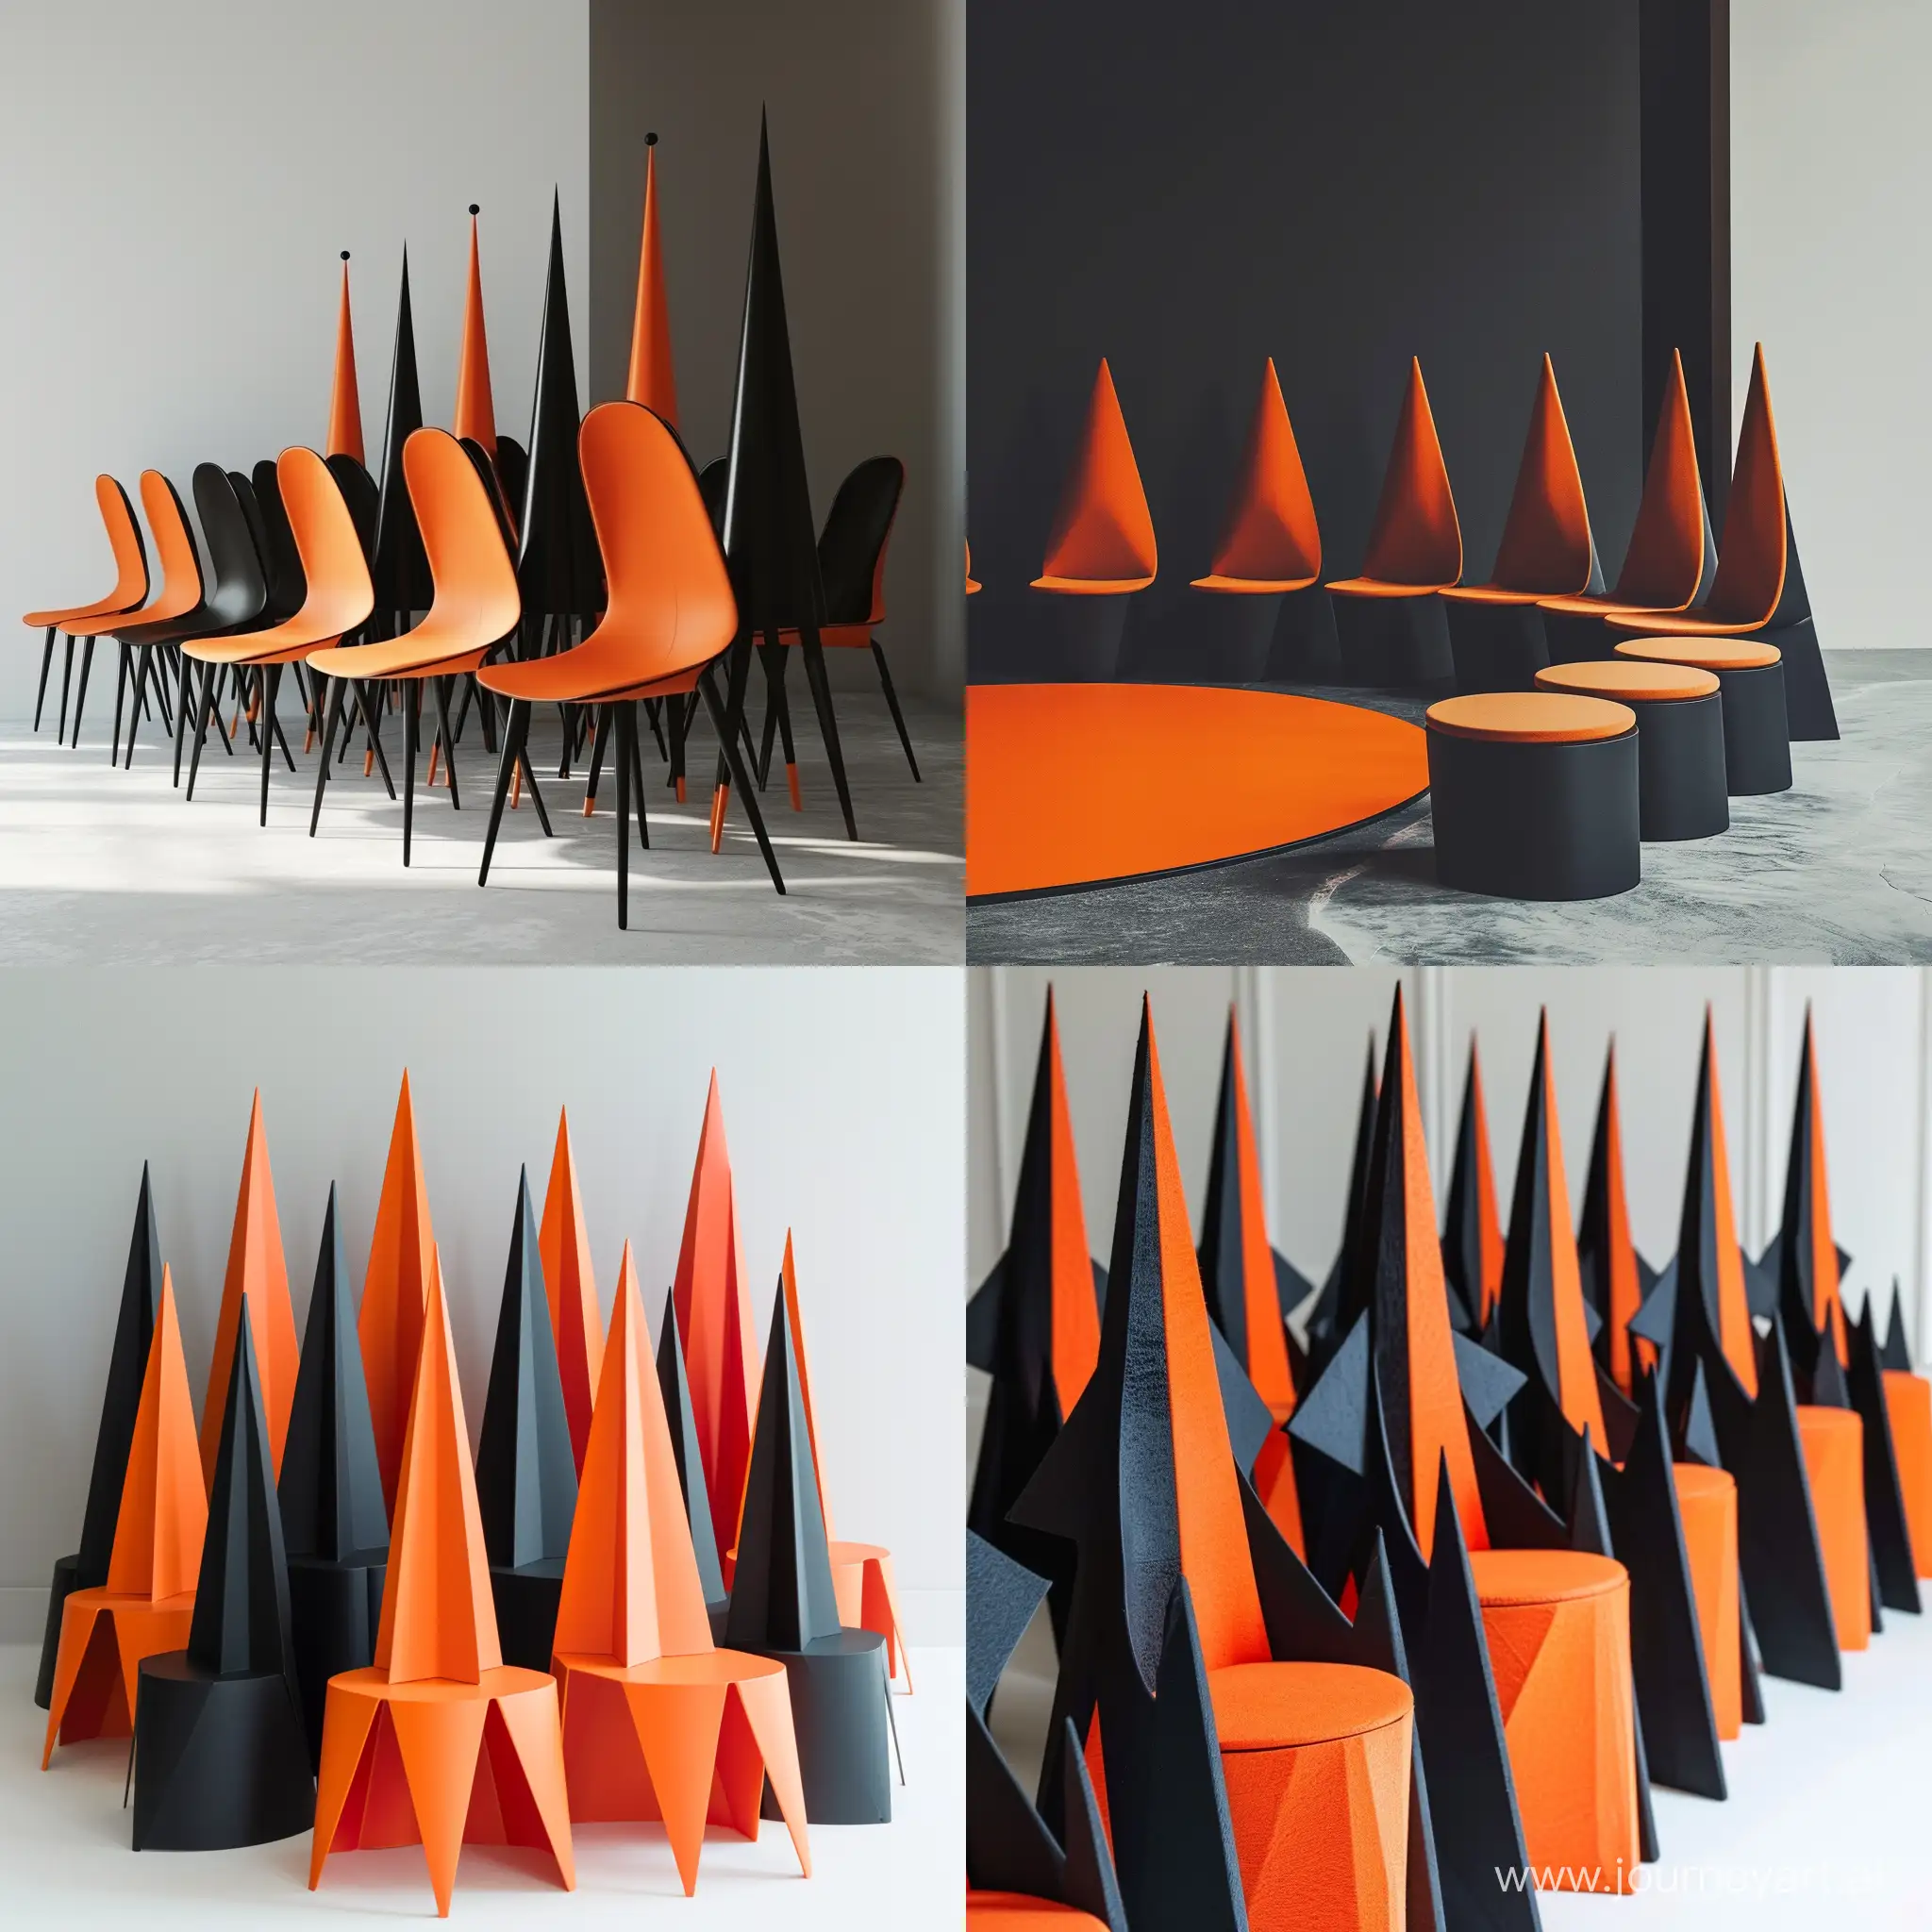 Minimalist-Chairs-in-Orange-and-Black-Tone